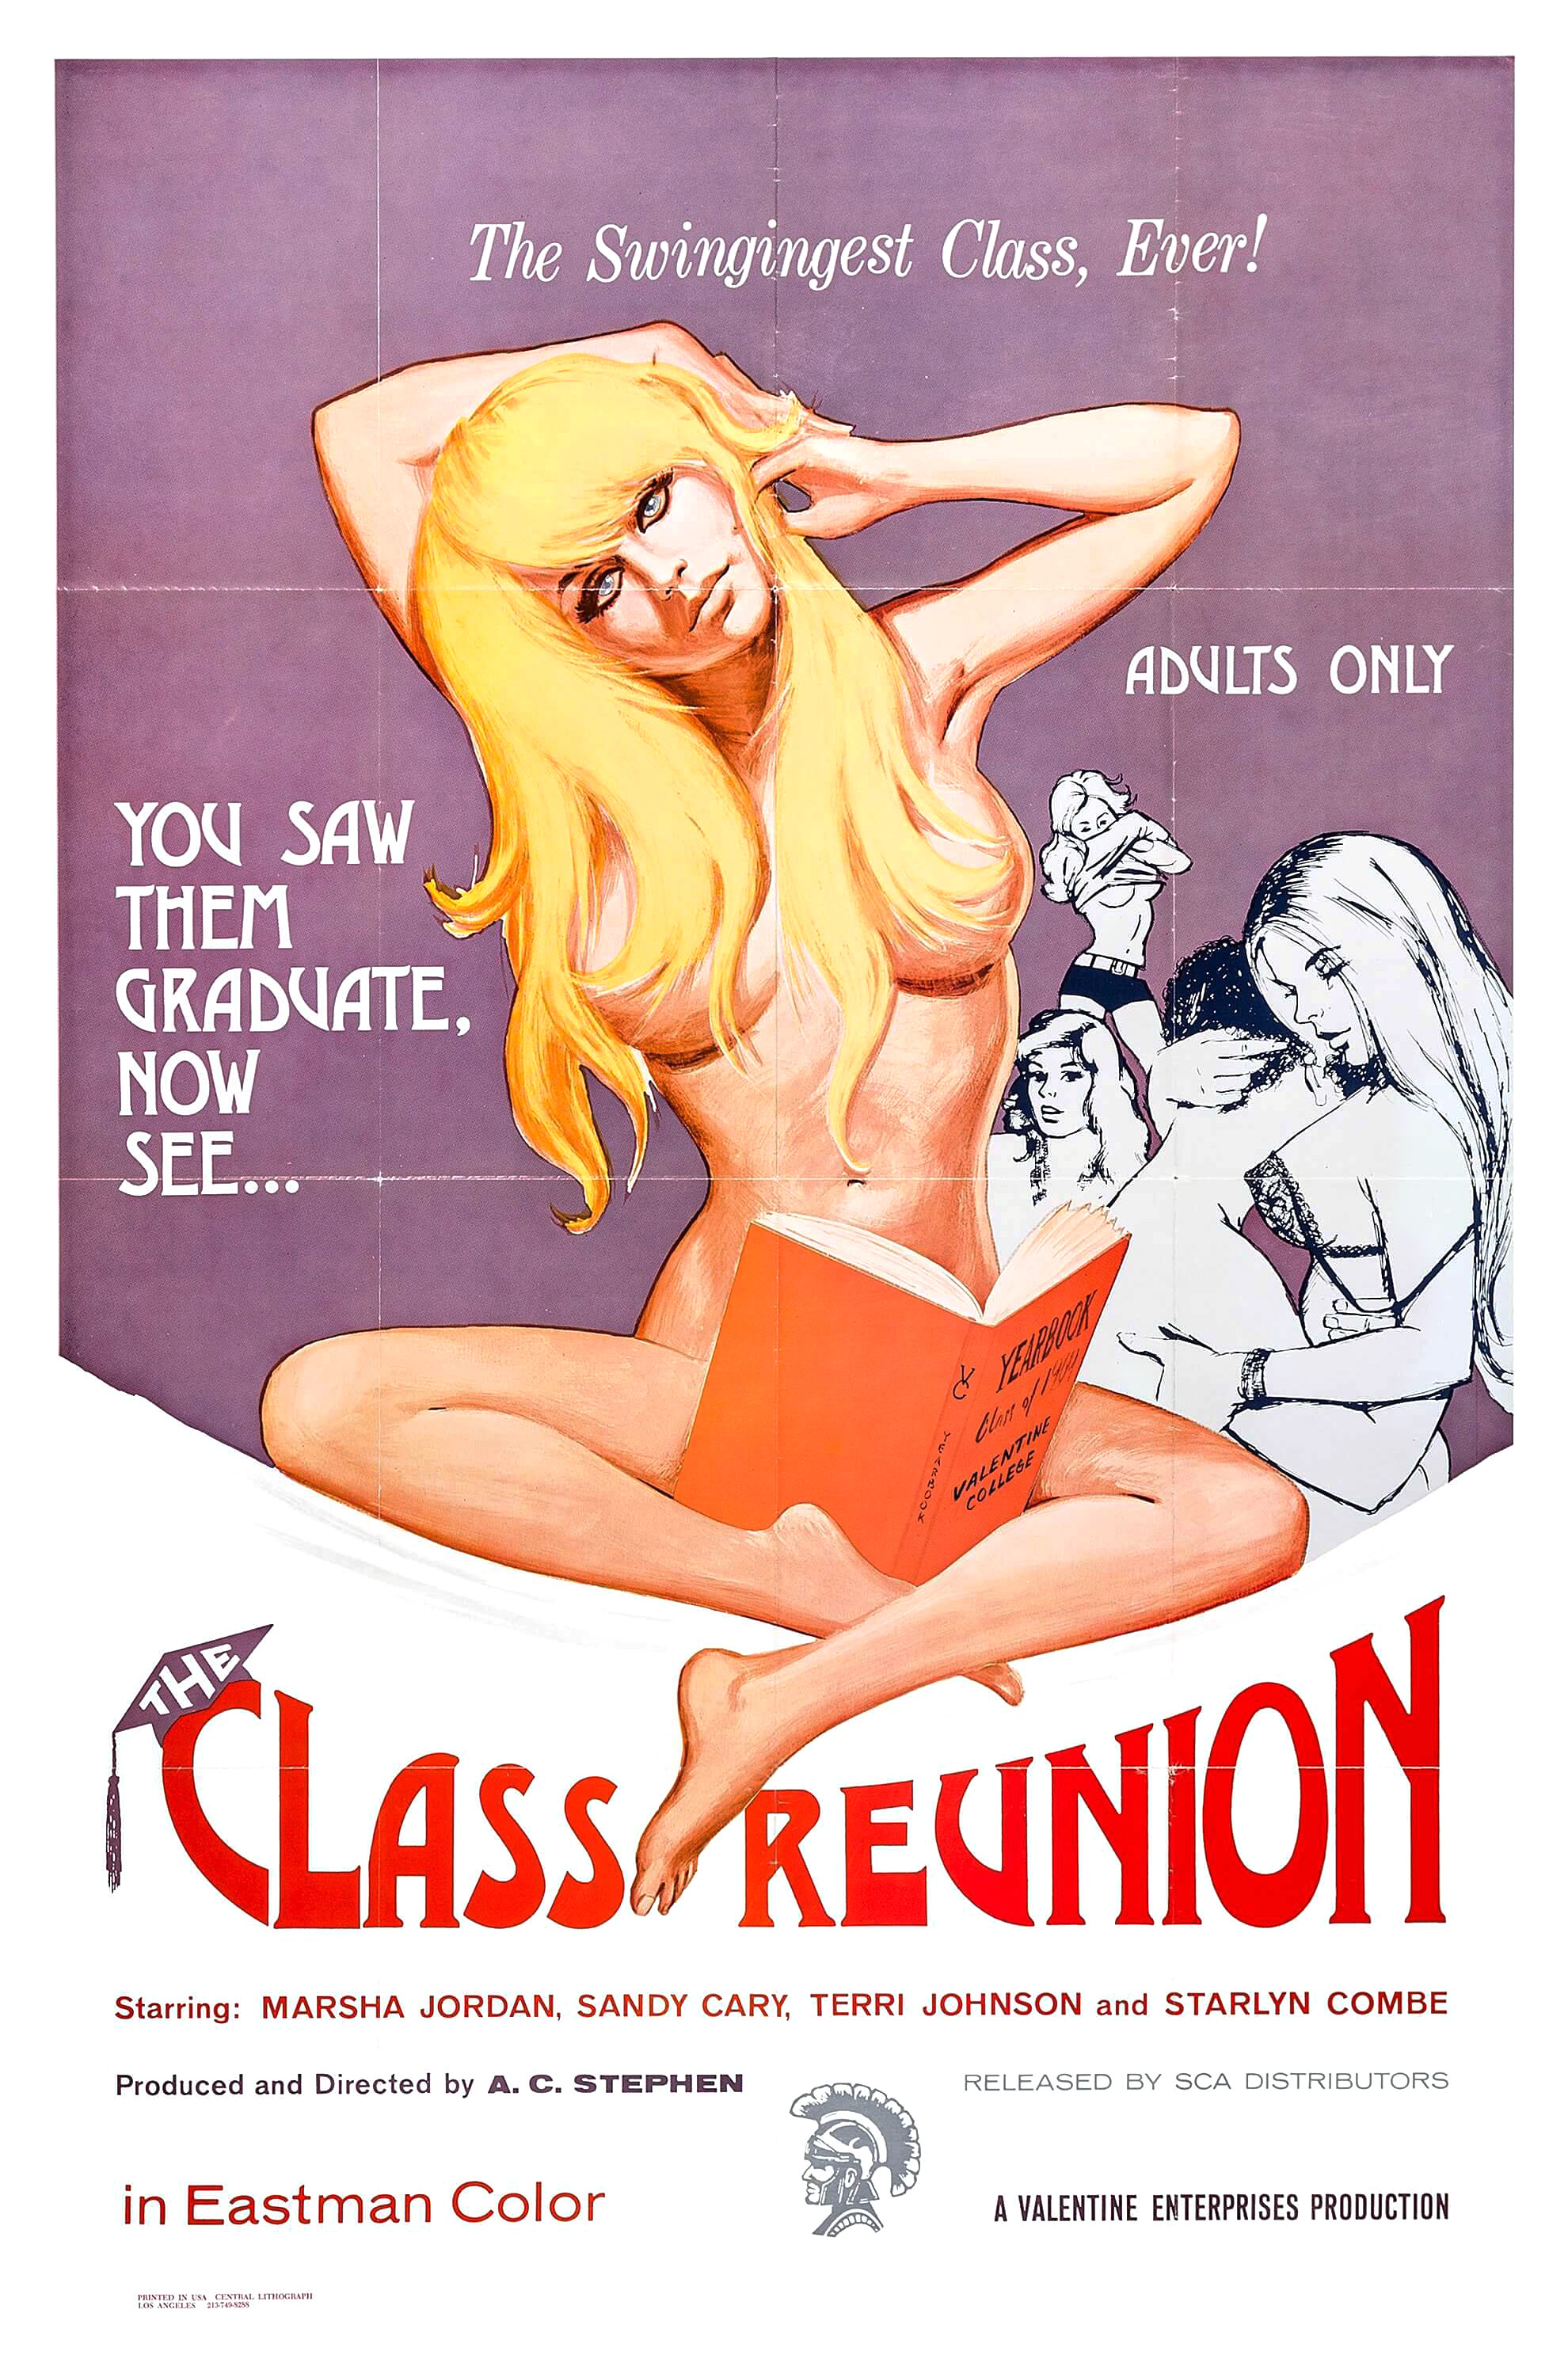 The Class Reunion (1972) Screenshot 1 